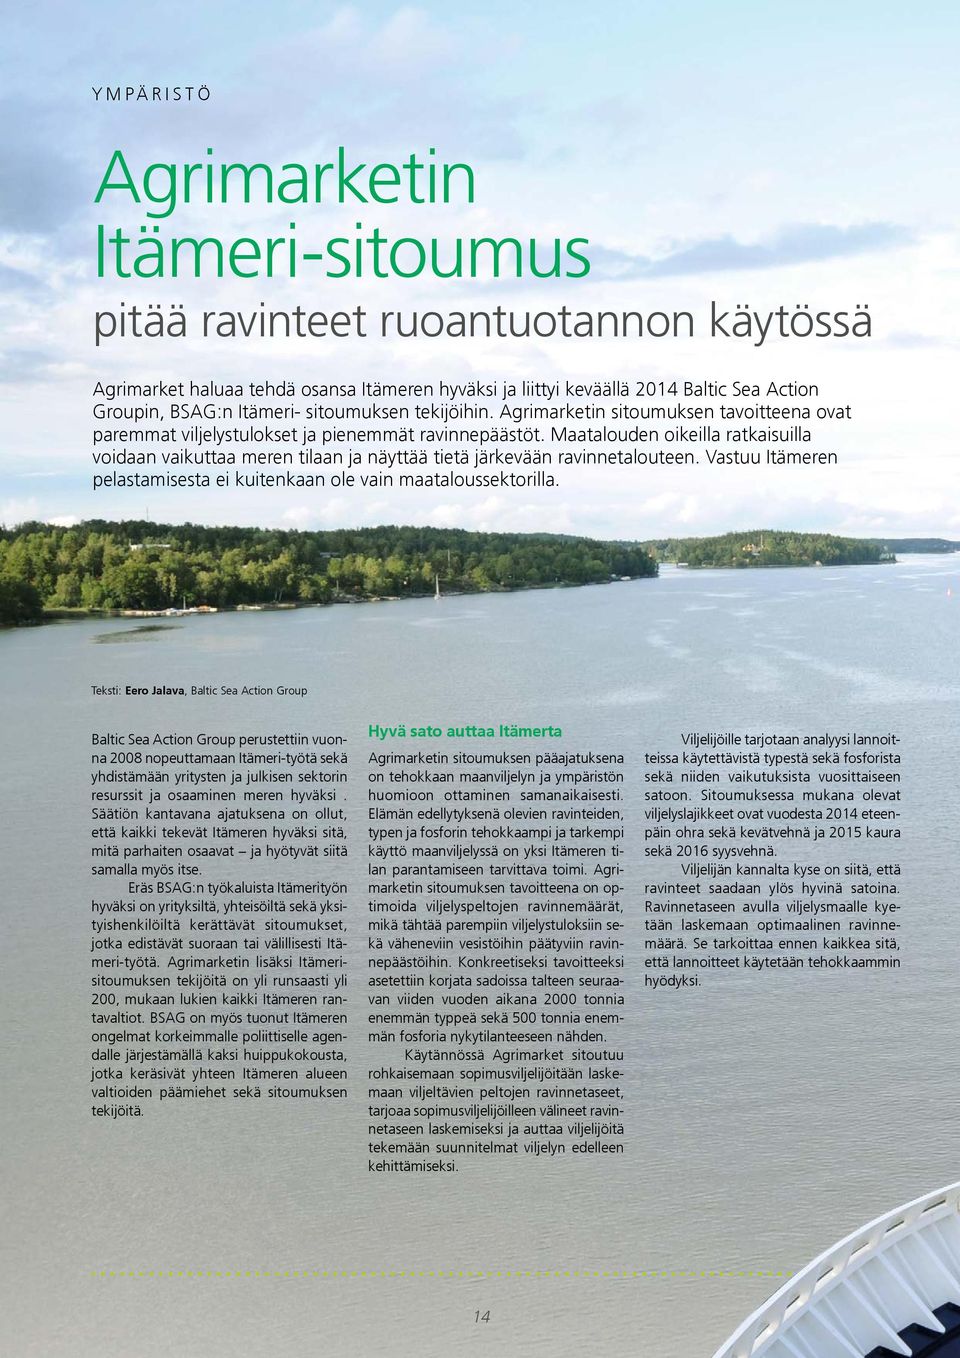 Maatalouden oikeilla ratkaisuilla voidaan vaikuttaa meren tilaan ja näyttää tietä järkevään ravinnetalouteen. Vastuu Itämeren pelastamisesta ei kuitenkaan ole vain maataloussektorilla.